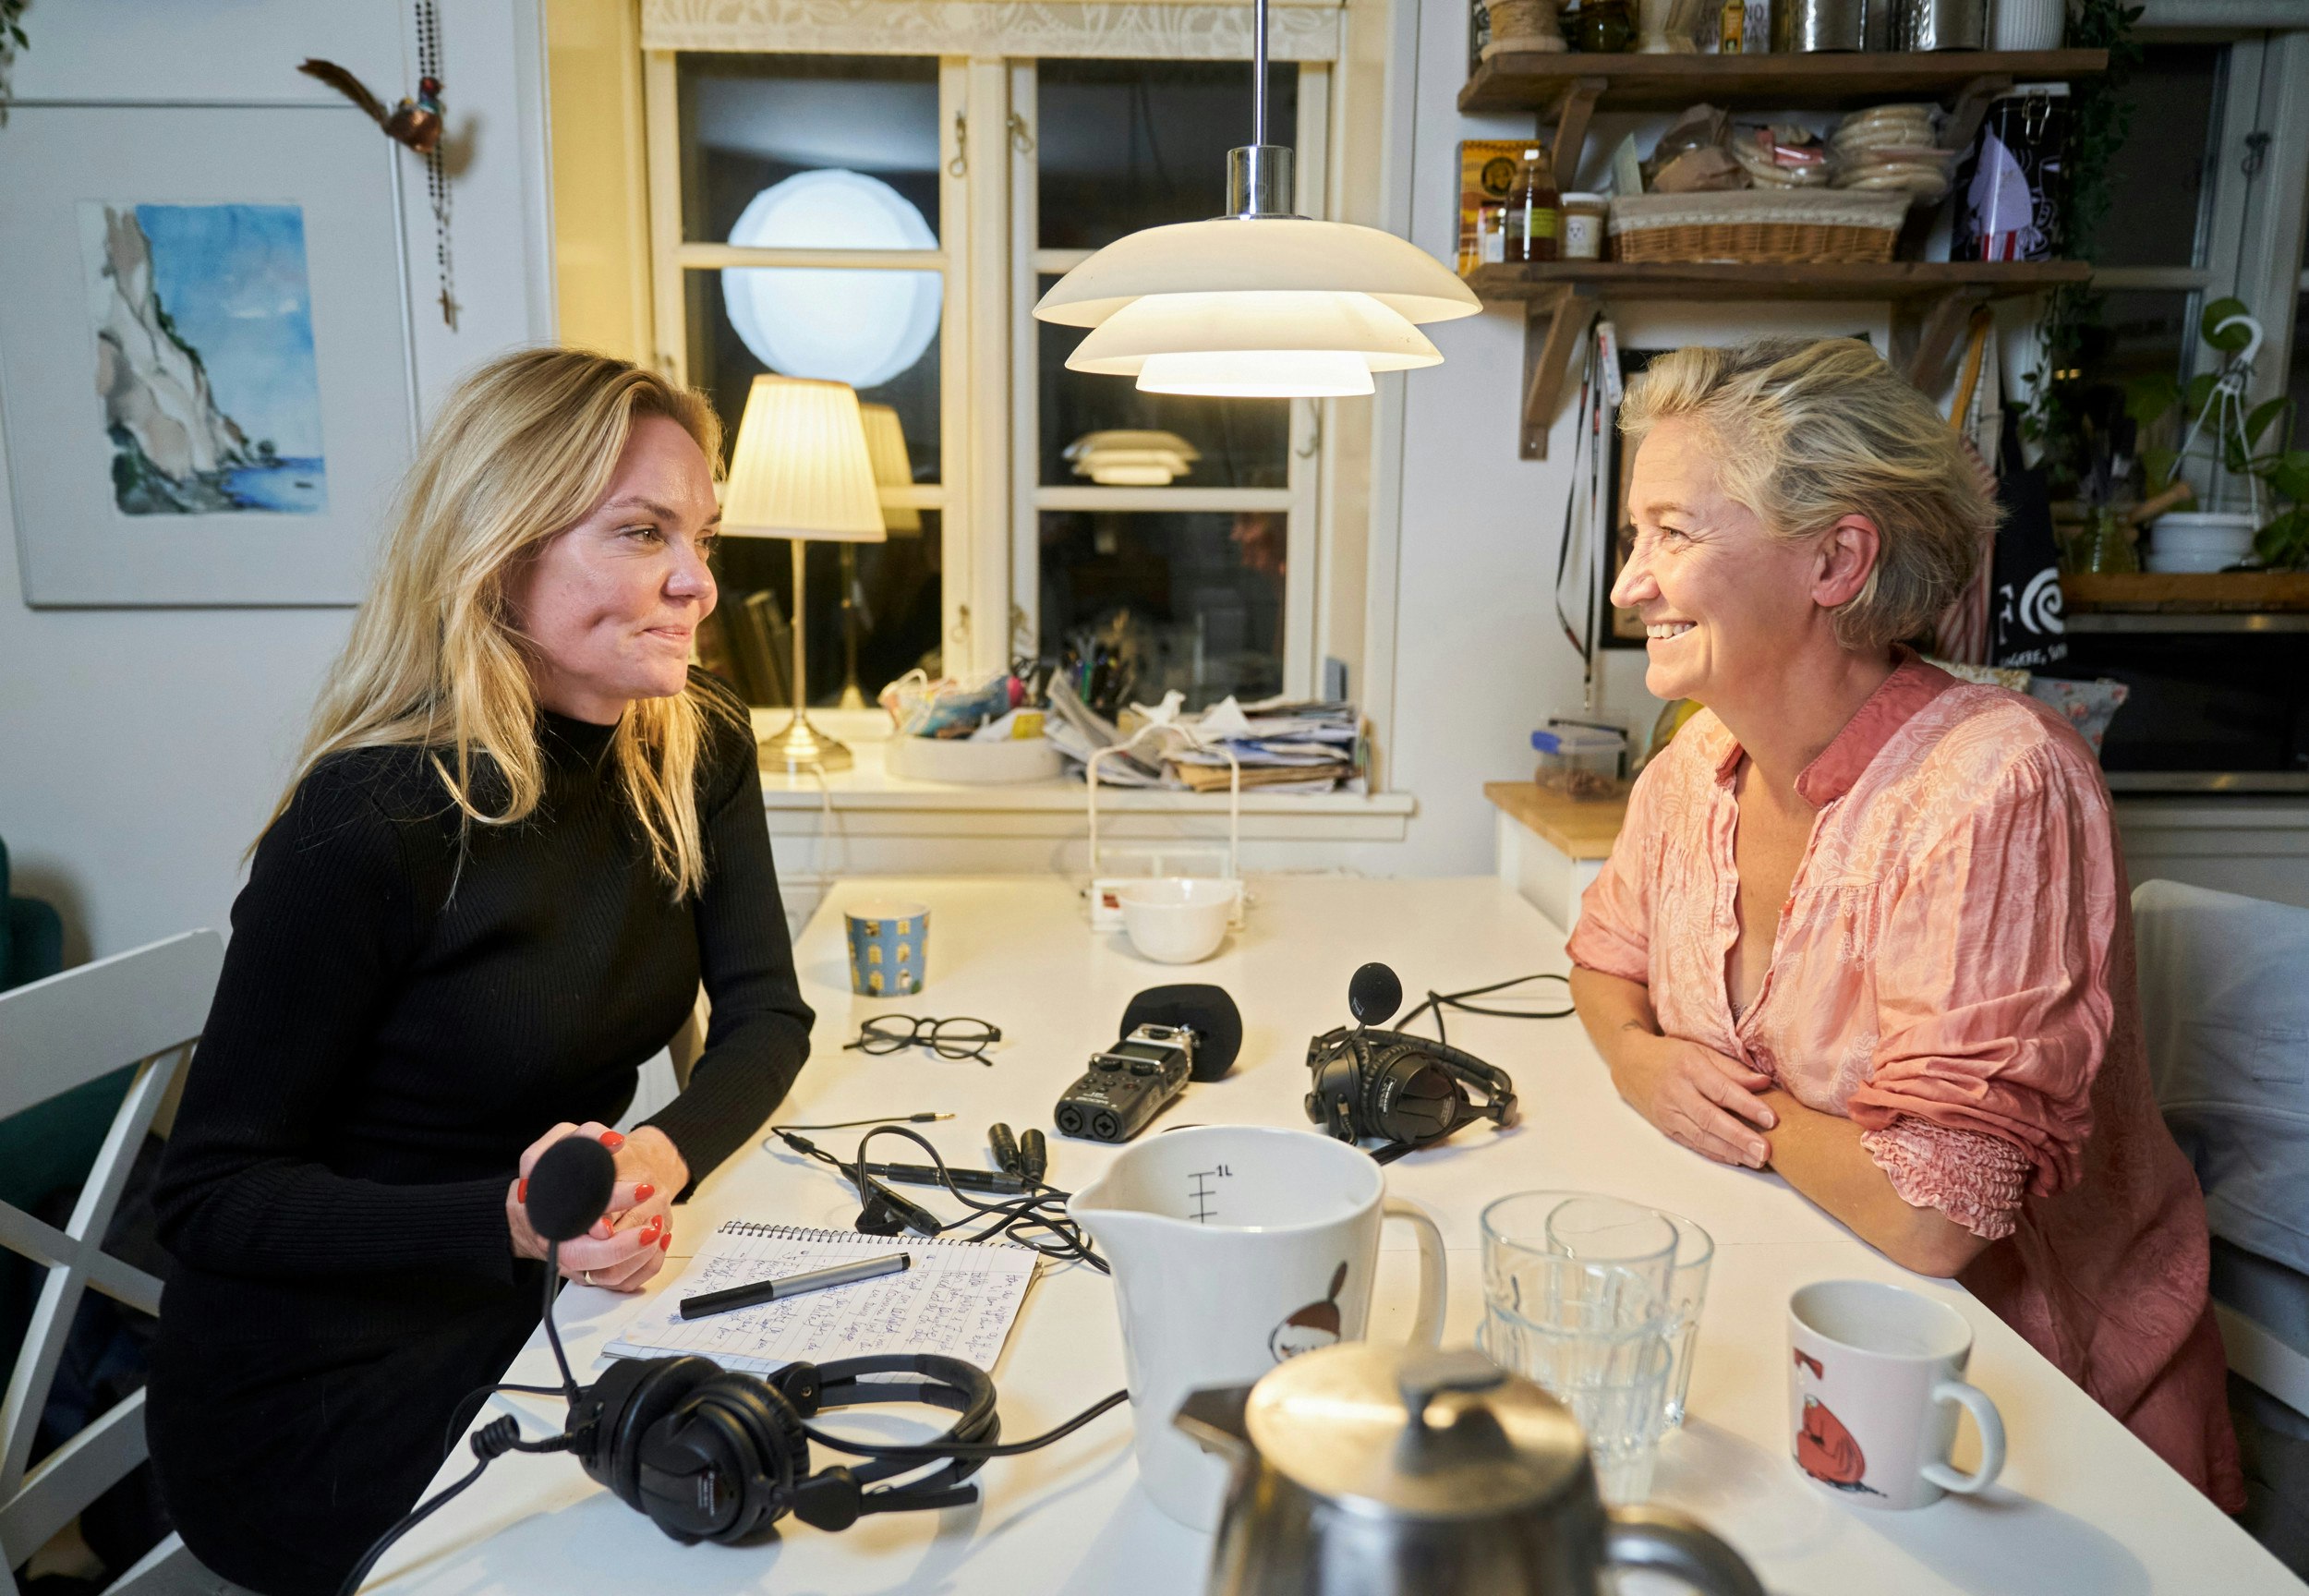 Lisbeth Zornig Andersen har fortalt sin historie til journalist Karin Heurlin i podcasten ”Min kærlighedshistorie.” Hun gør det især i håb om at vise andre, at man godt kan lære at være i et langt og godt forhold, selvom man har en tung bagage.
